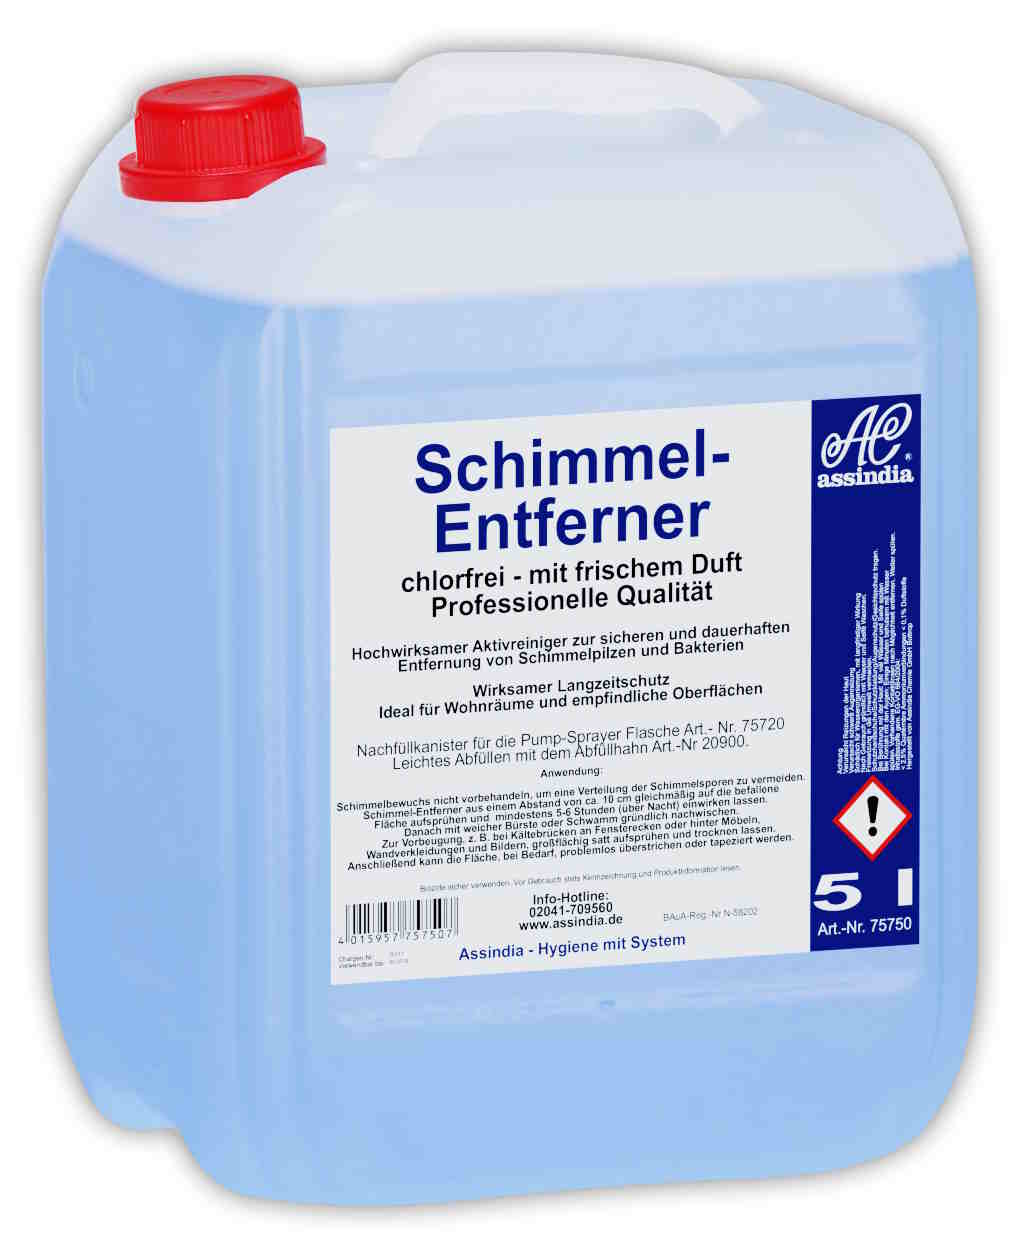 Schimmelentferner Professional chlorfrei 5 Liter